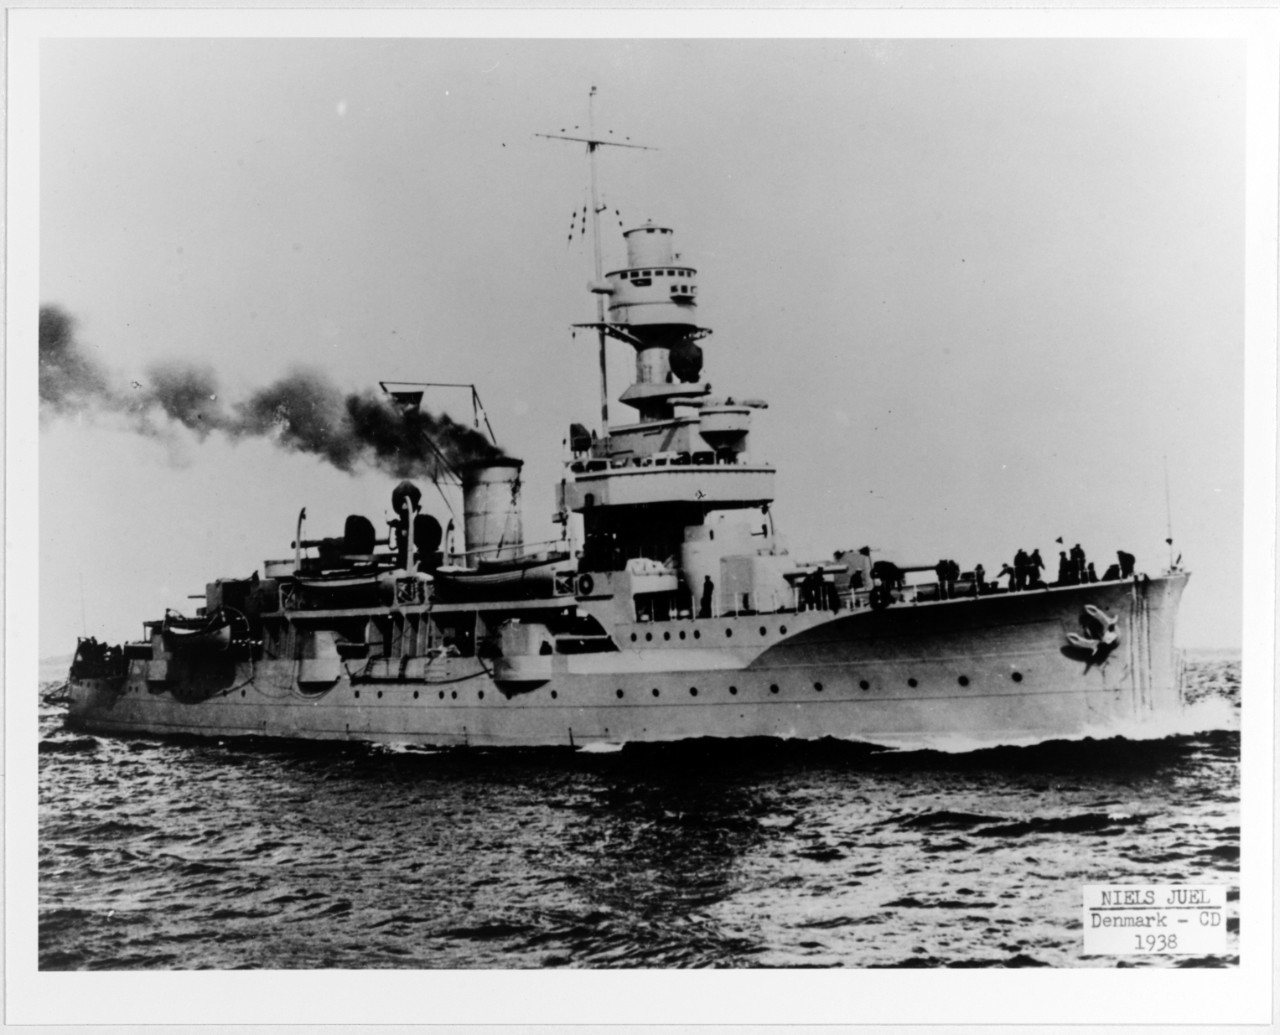 NIELS JUEL (Danish Coast Defense Ship, 1918-1952)